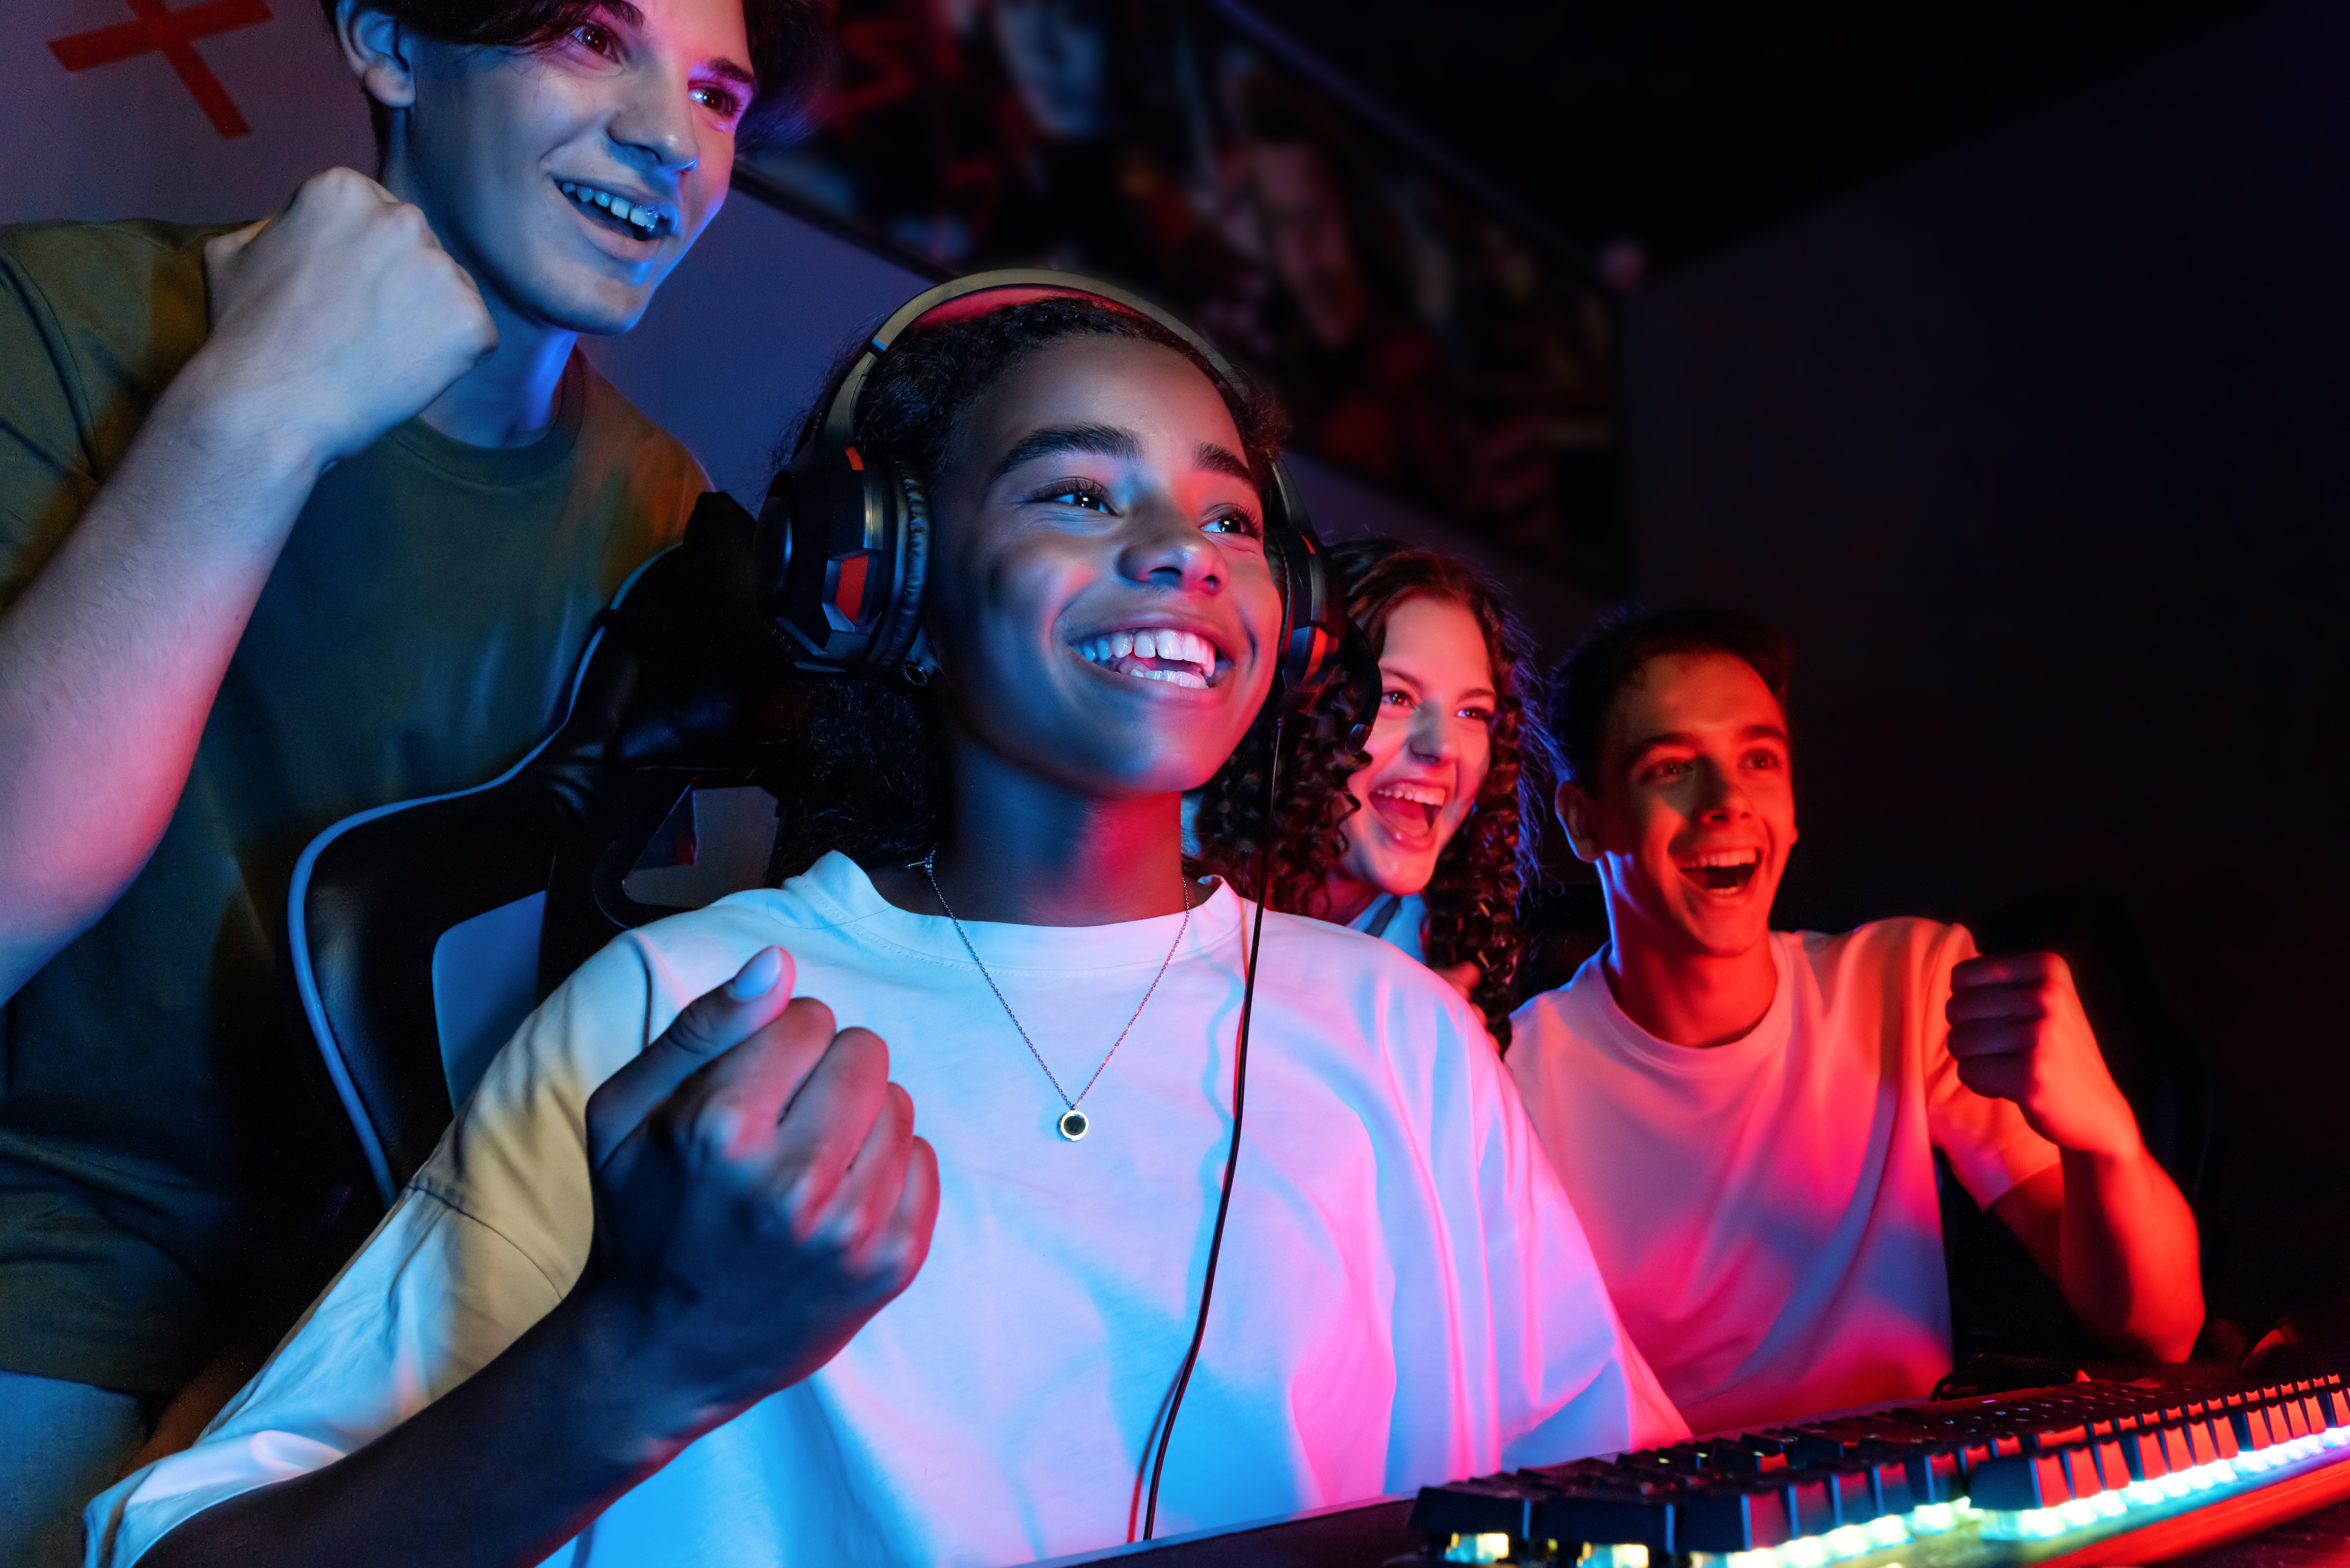 Imagem contendo vários adolescentes, em frente a um monitor, comemorando a vitória no jogo de uma das garotas.